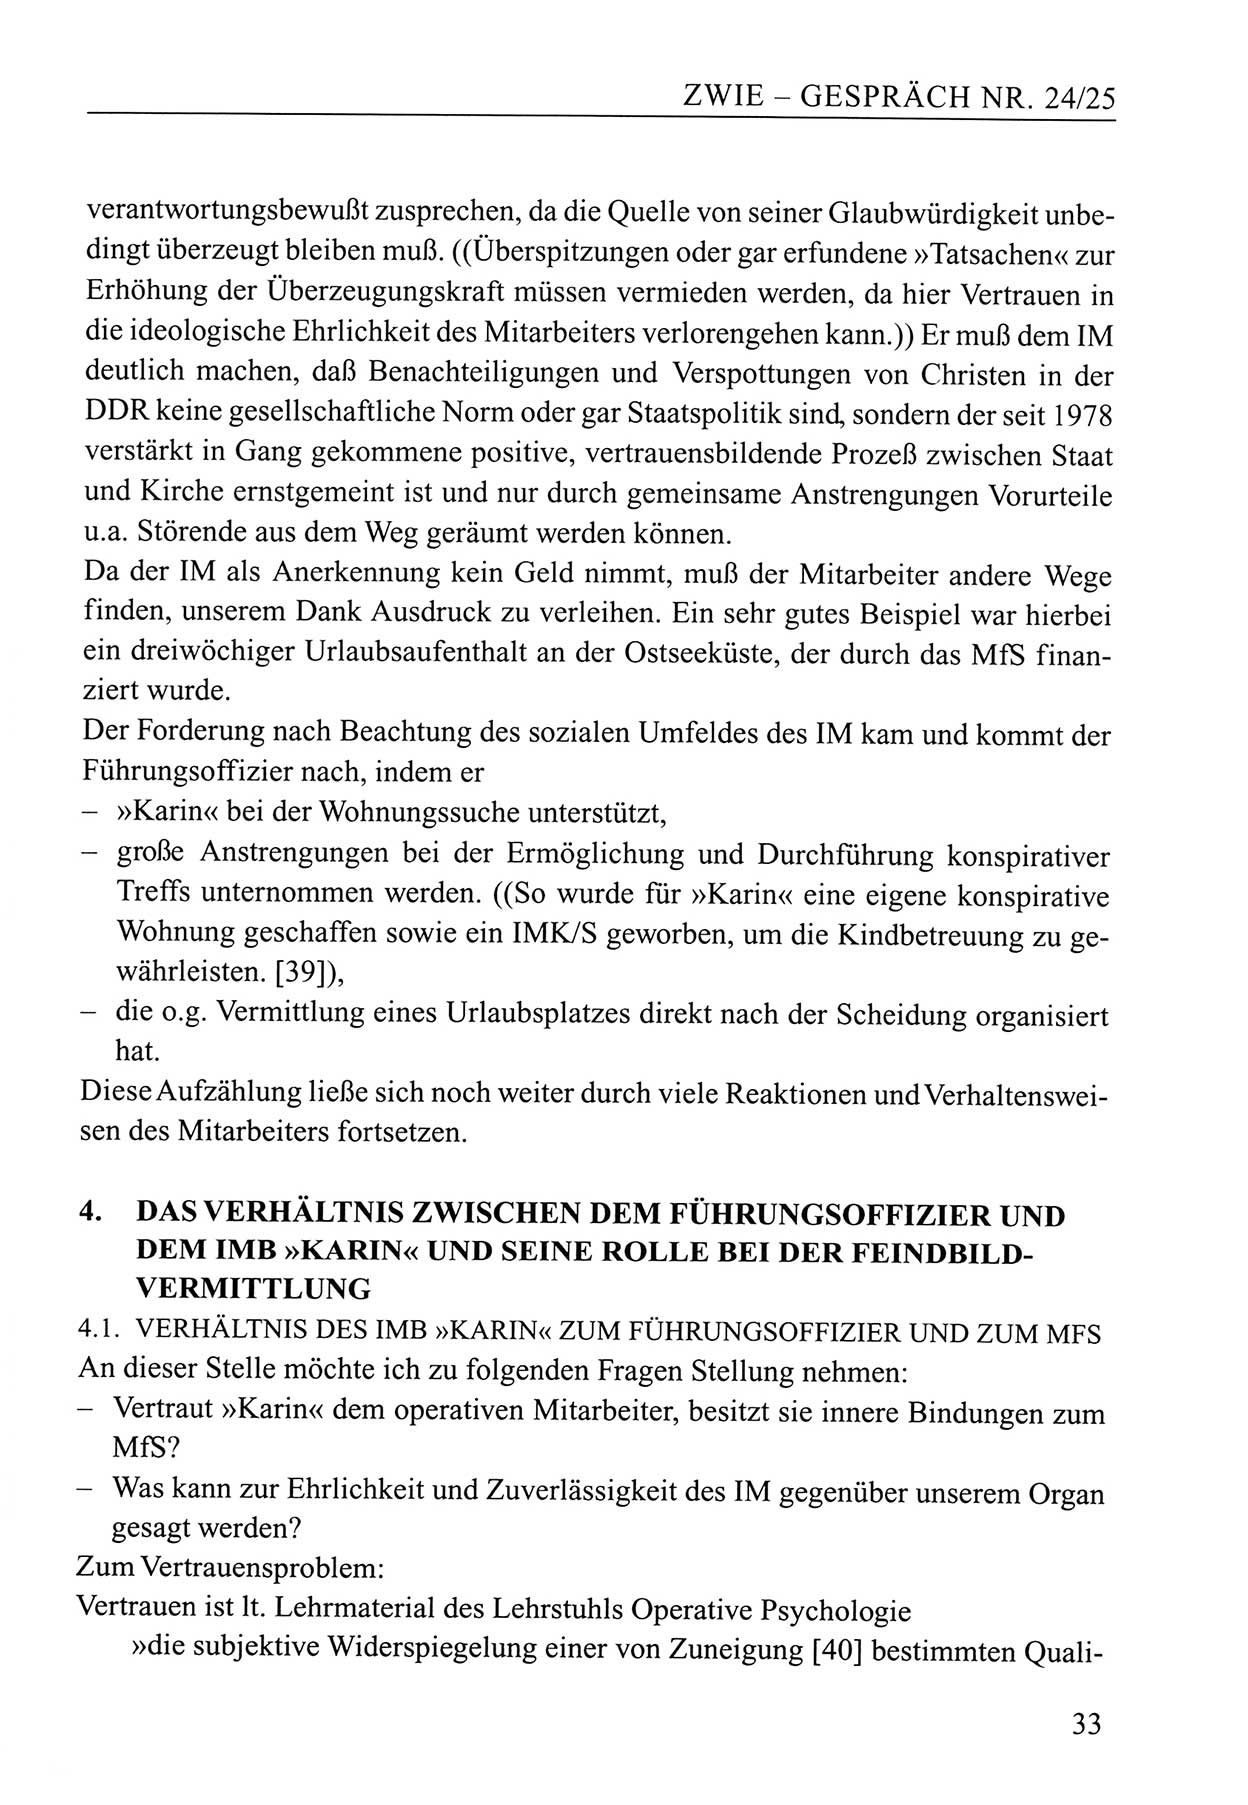 Zwie-Gespräch, Beiträge zum Umgang mit der Staatssicherheits-Vergangenheit [Deutsche Demokratische Republik (DDR)], Ausgabe Nr. 24/25, Berlin 1994, Seite 33 (Zwie-Gespr. Ausg. 24/25 1994, S. 33)